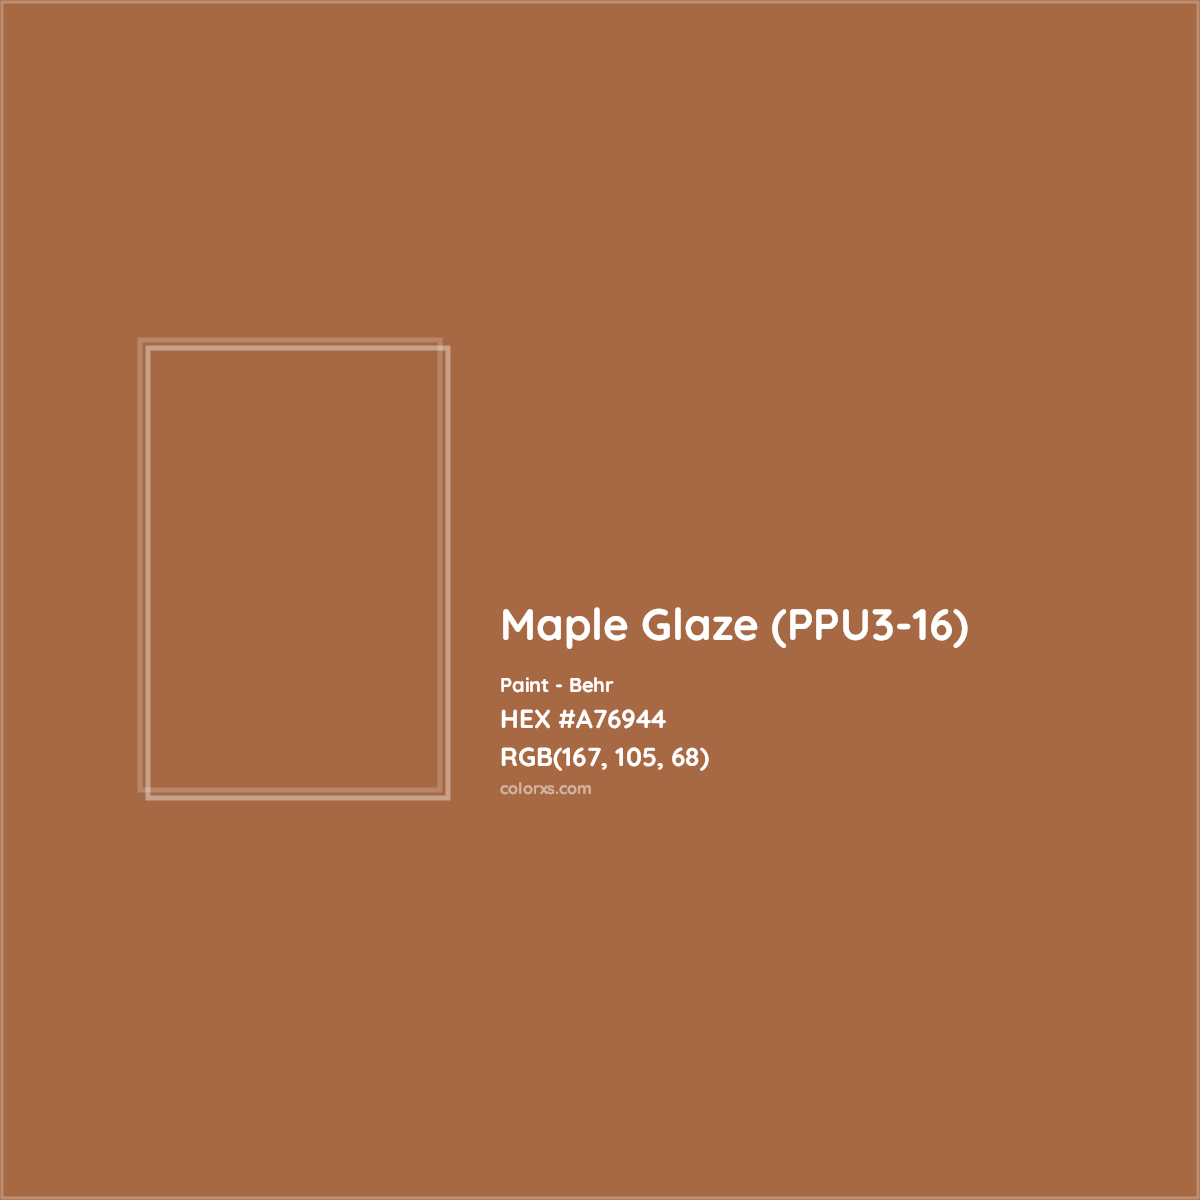 HEX #A76944 Maple Glaze (PPU3-16) Paint Behr - Color Code